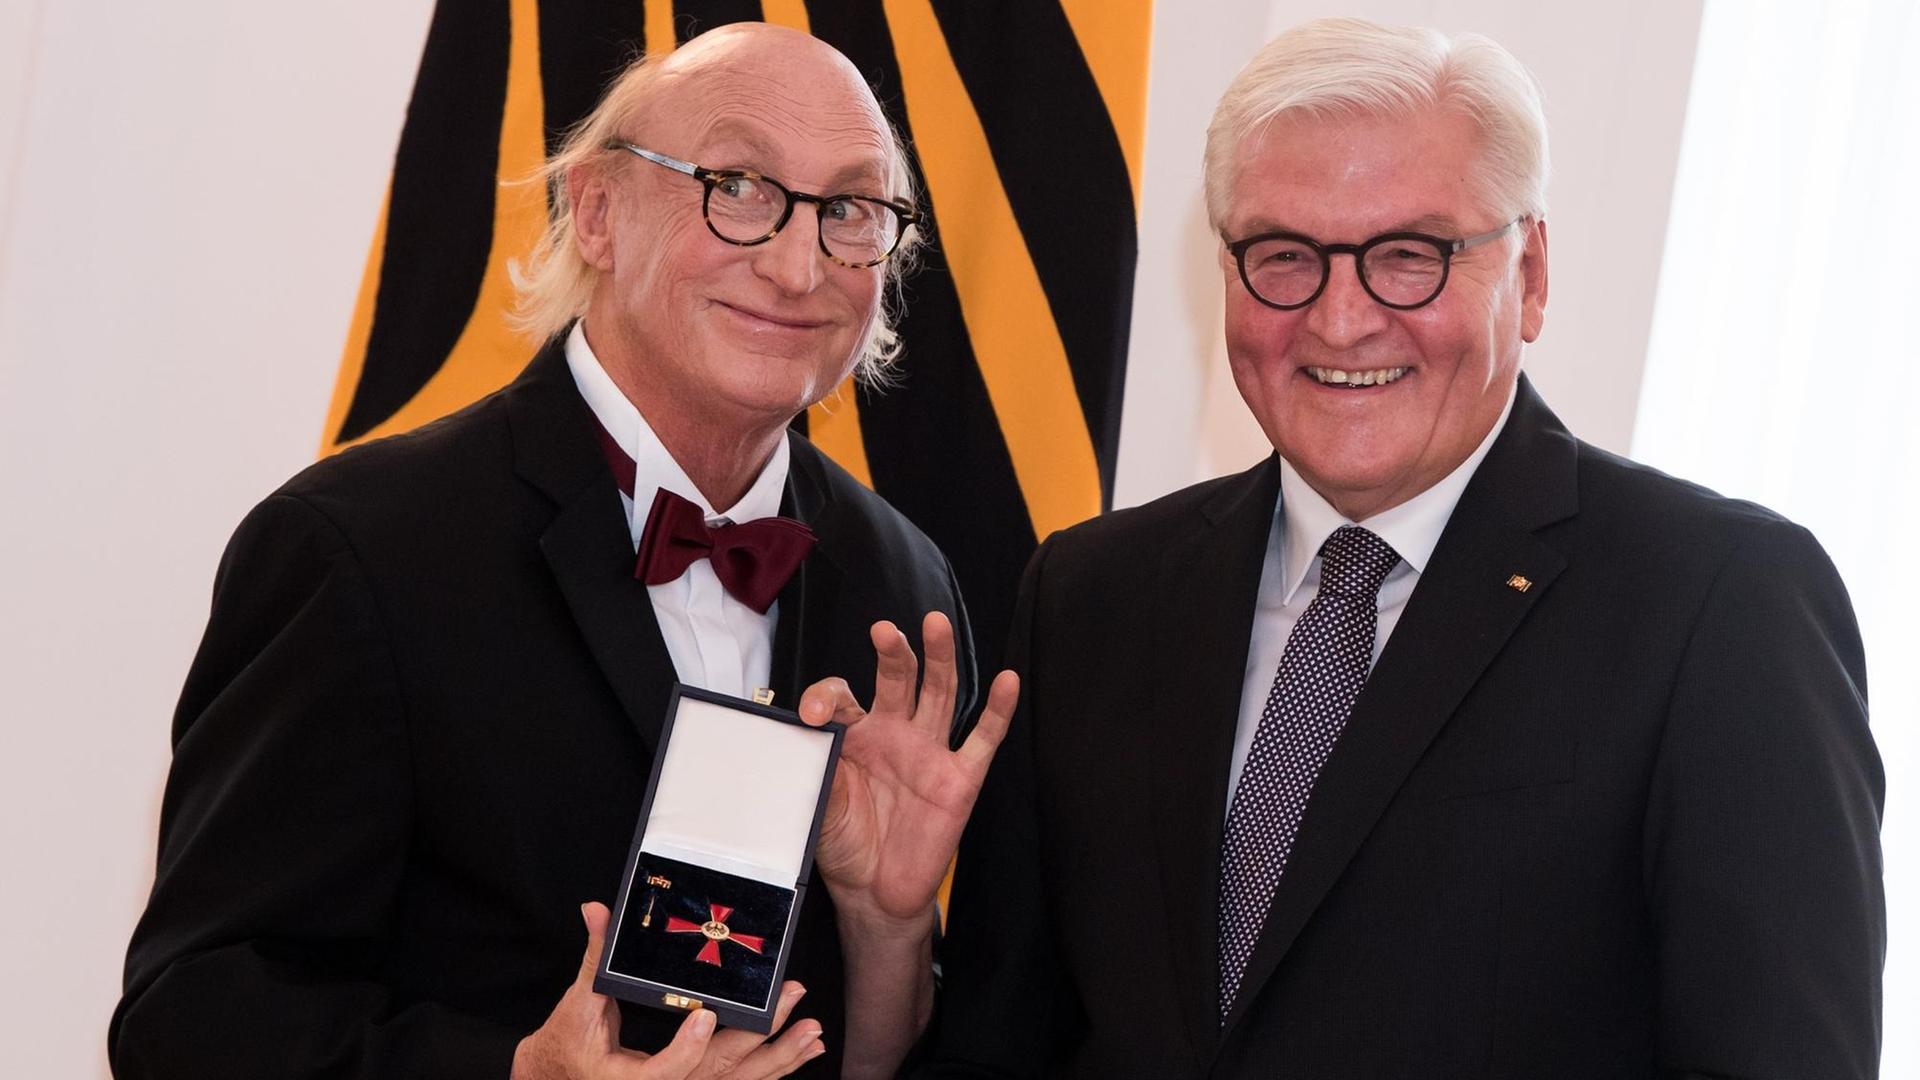 Auf dem Foto ist links der Komiker Otto Waalkes. Er hält den Verdienst-Orden in der Hand. Daneben steht der Bundes-Präsident. Er heißt Frank-Walter Steinmeier.